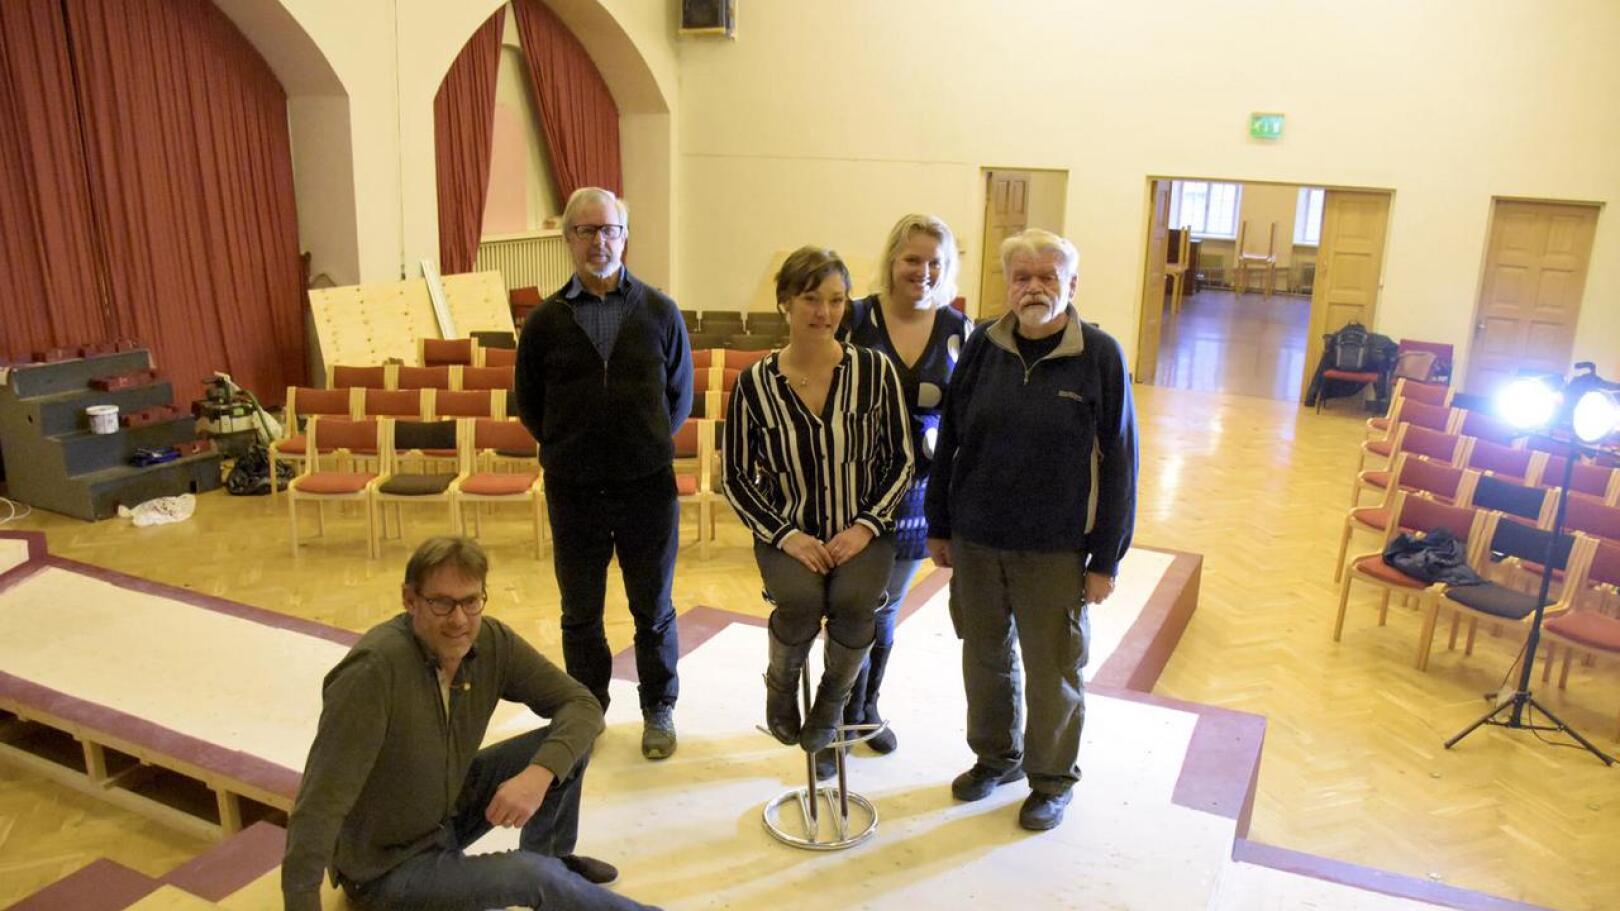 Palokunnantalon salia ei tunnista entisekseen. Tähtisadetta joulun alla lupaavat ohjaaja Anders Hassel (istumassa), Guy Björklund, Annika Strömberg, Heili Hintz ja Nils Karlström.